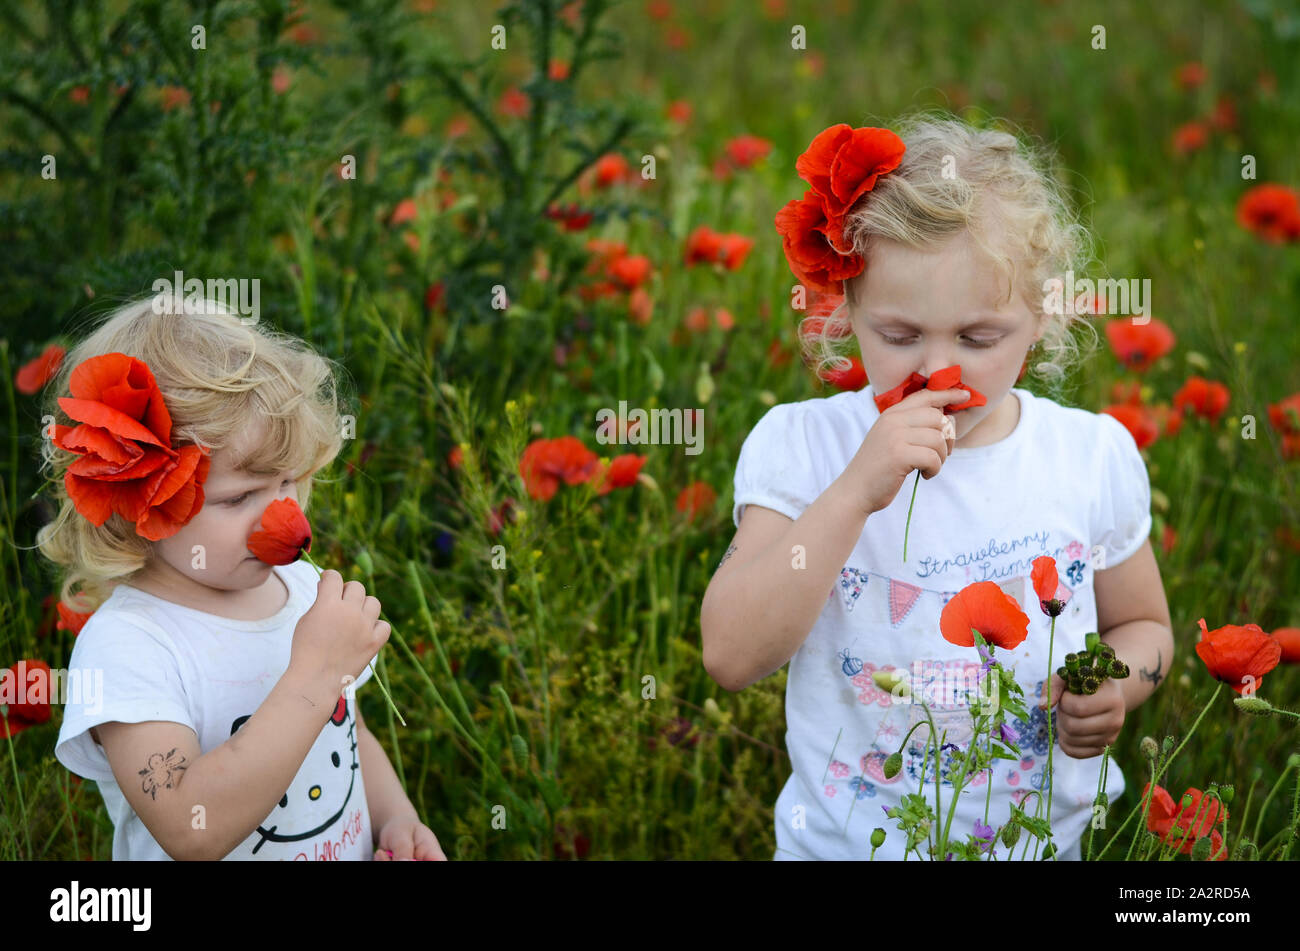 Deux blondes dans un corn poppy meadow Banque D'Images